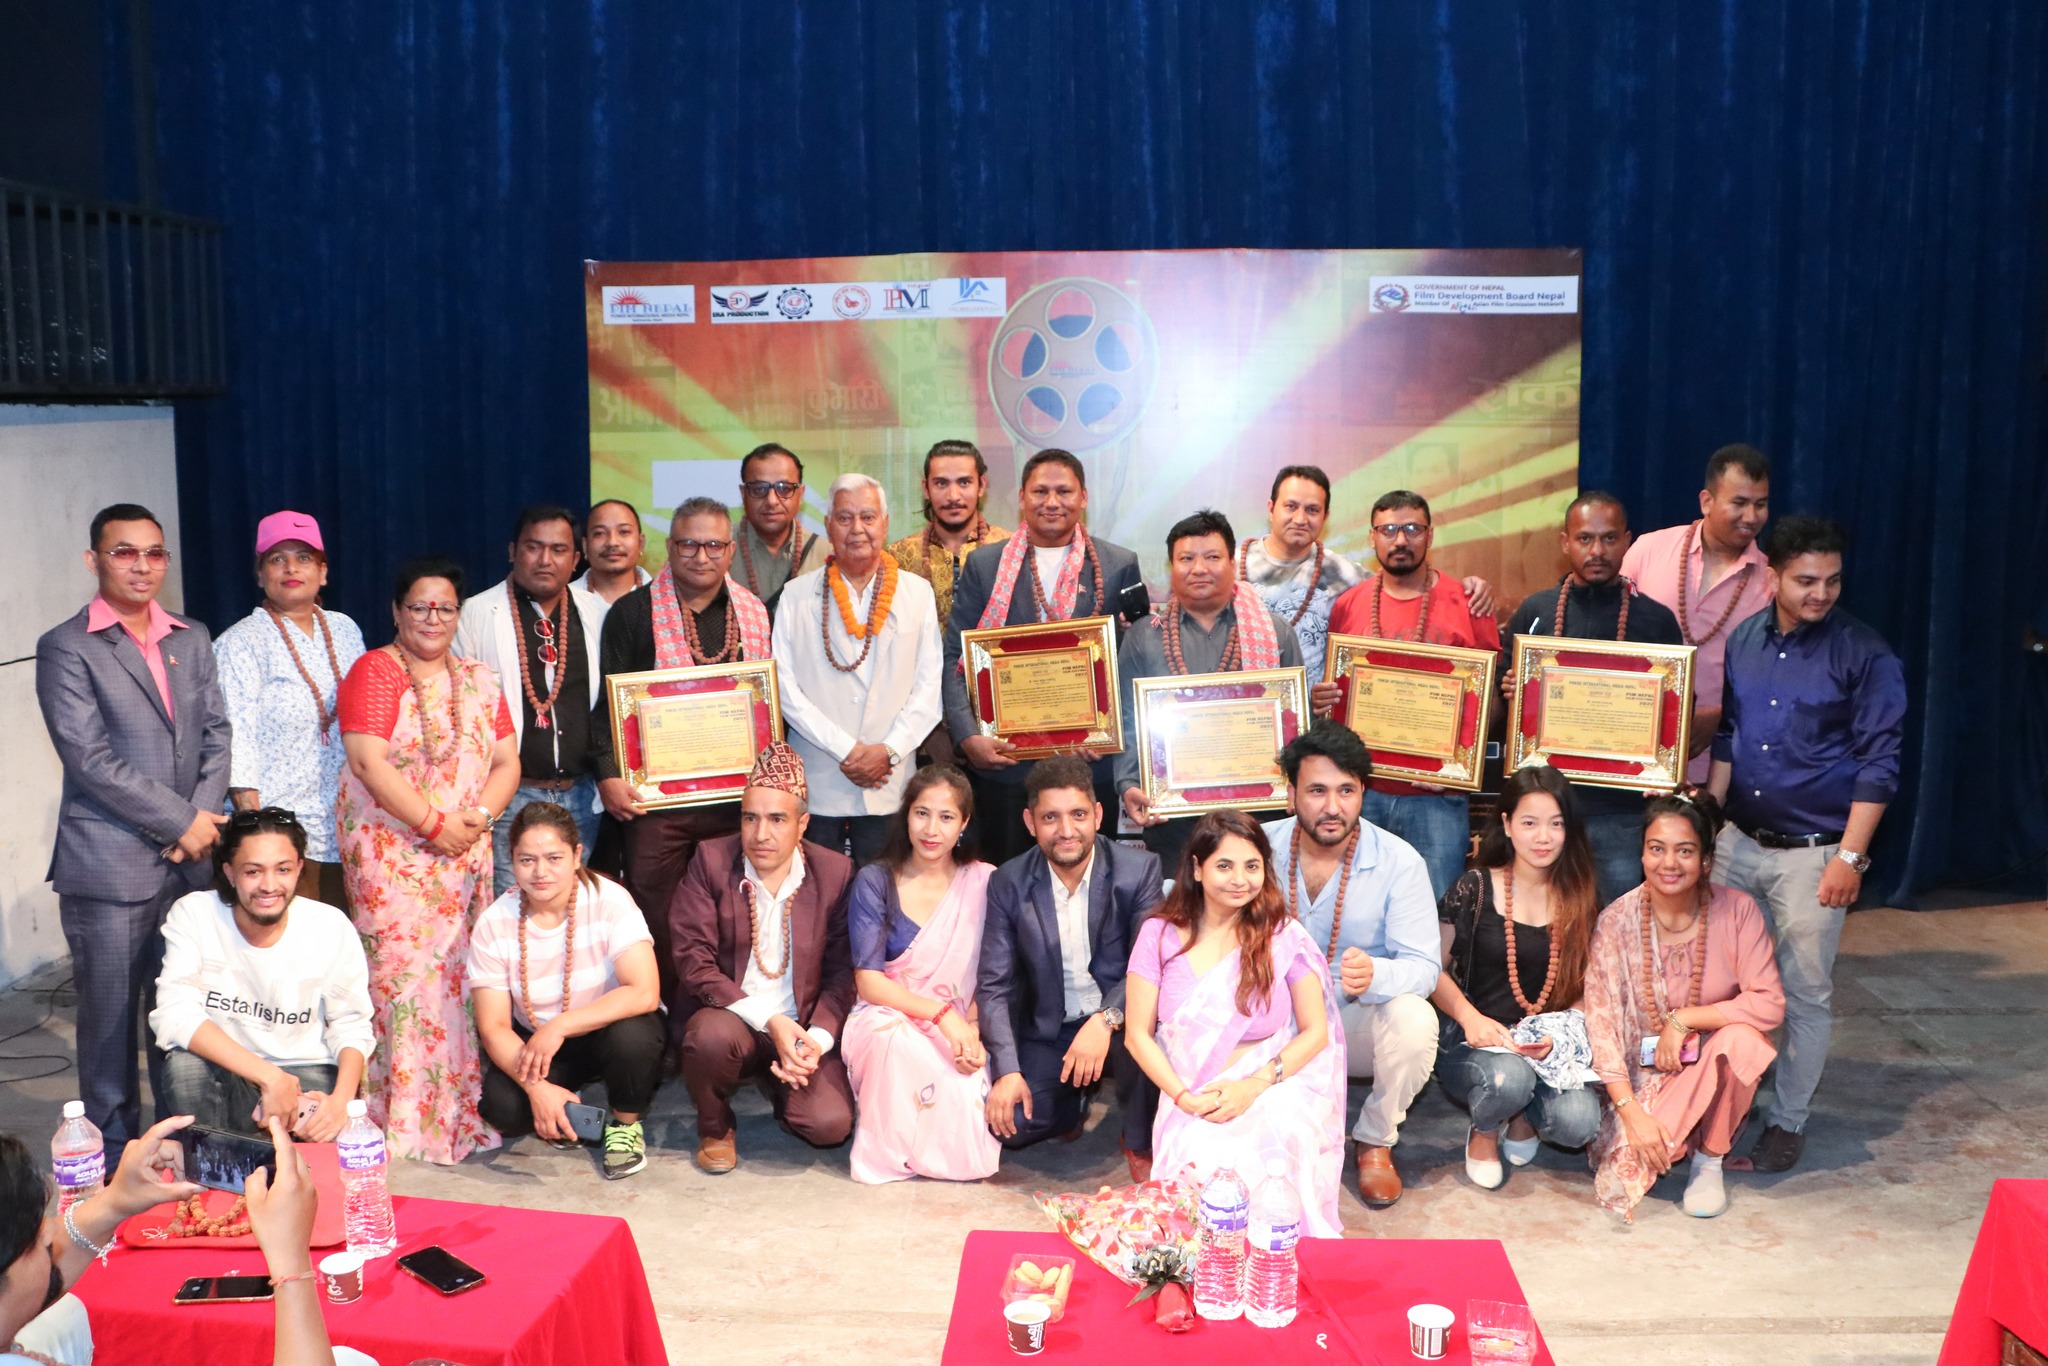 राजधानीमा पाँचौं पिम नेपाल फिल्म फेस्टिबल शुरु